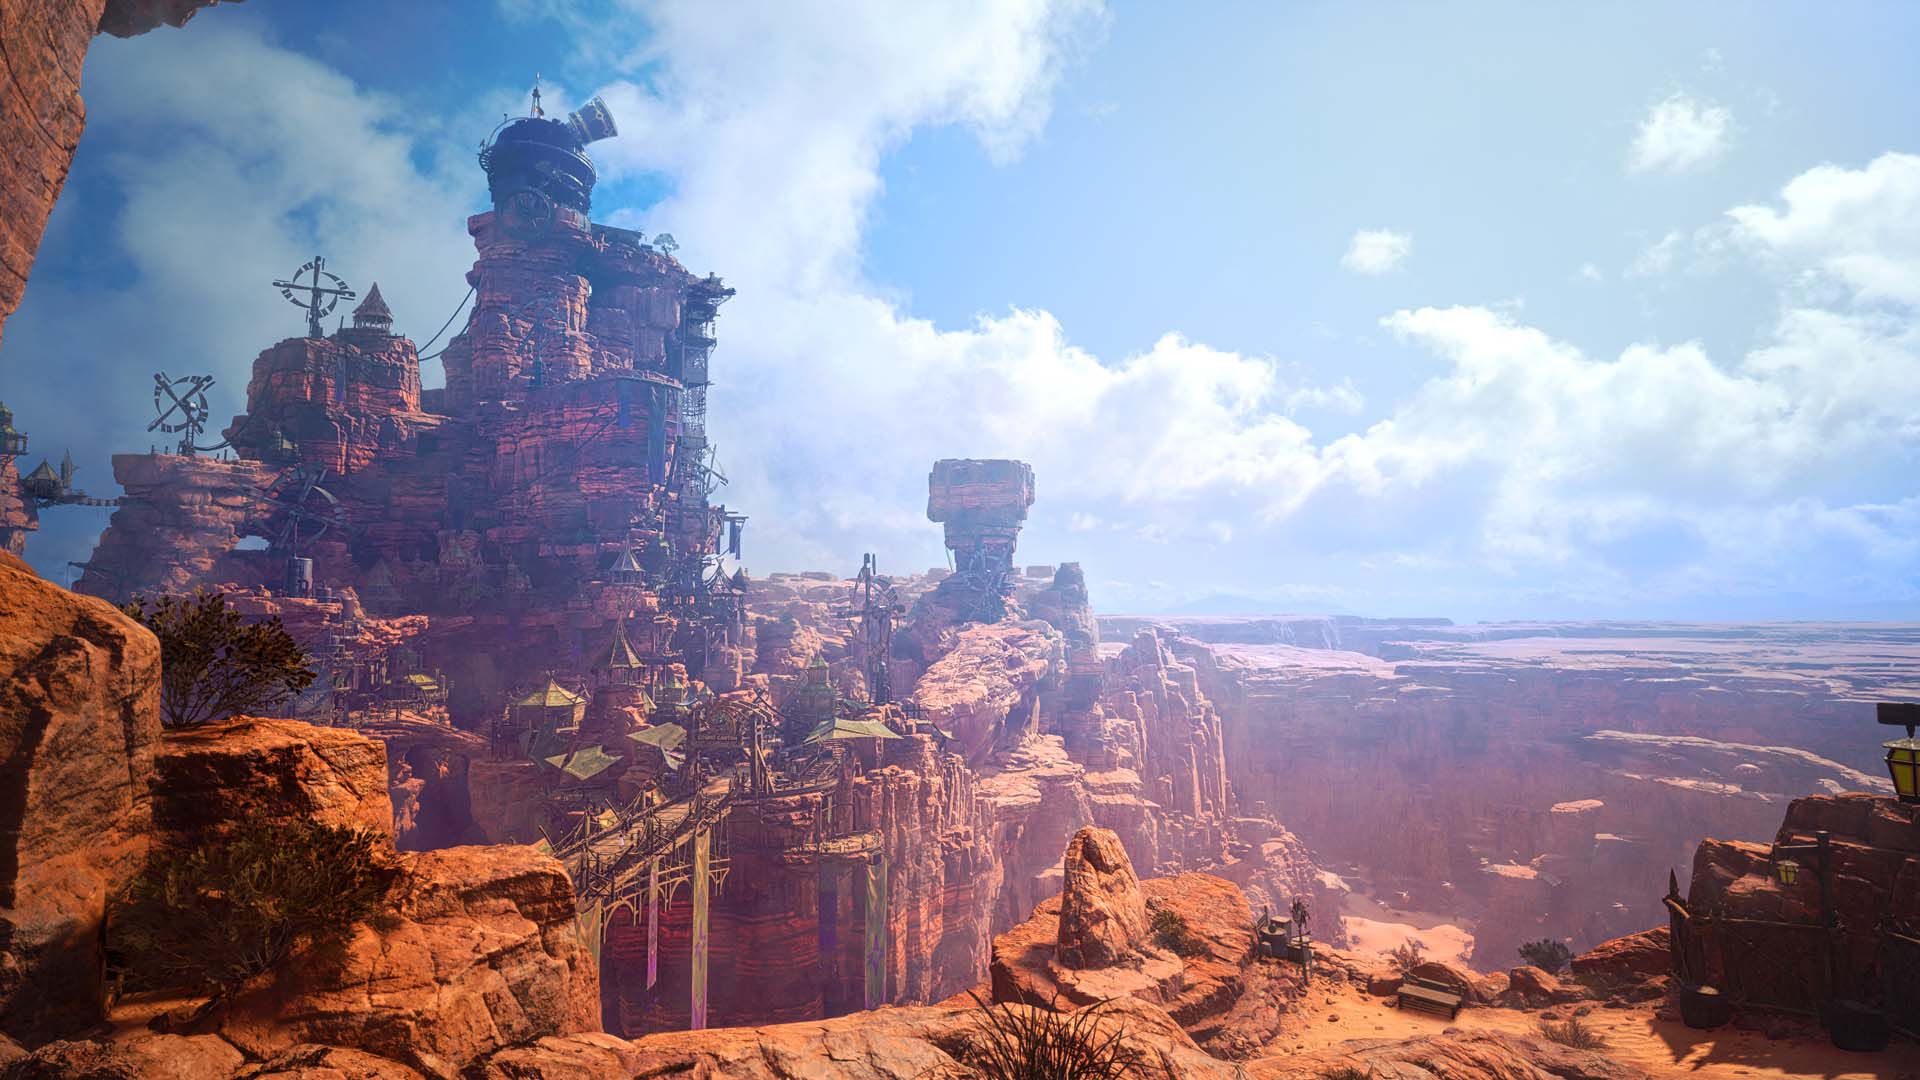 Image: Final Fantasy 7 Rebirthの信じられないほど詳細な渓谷の景観